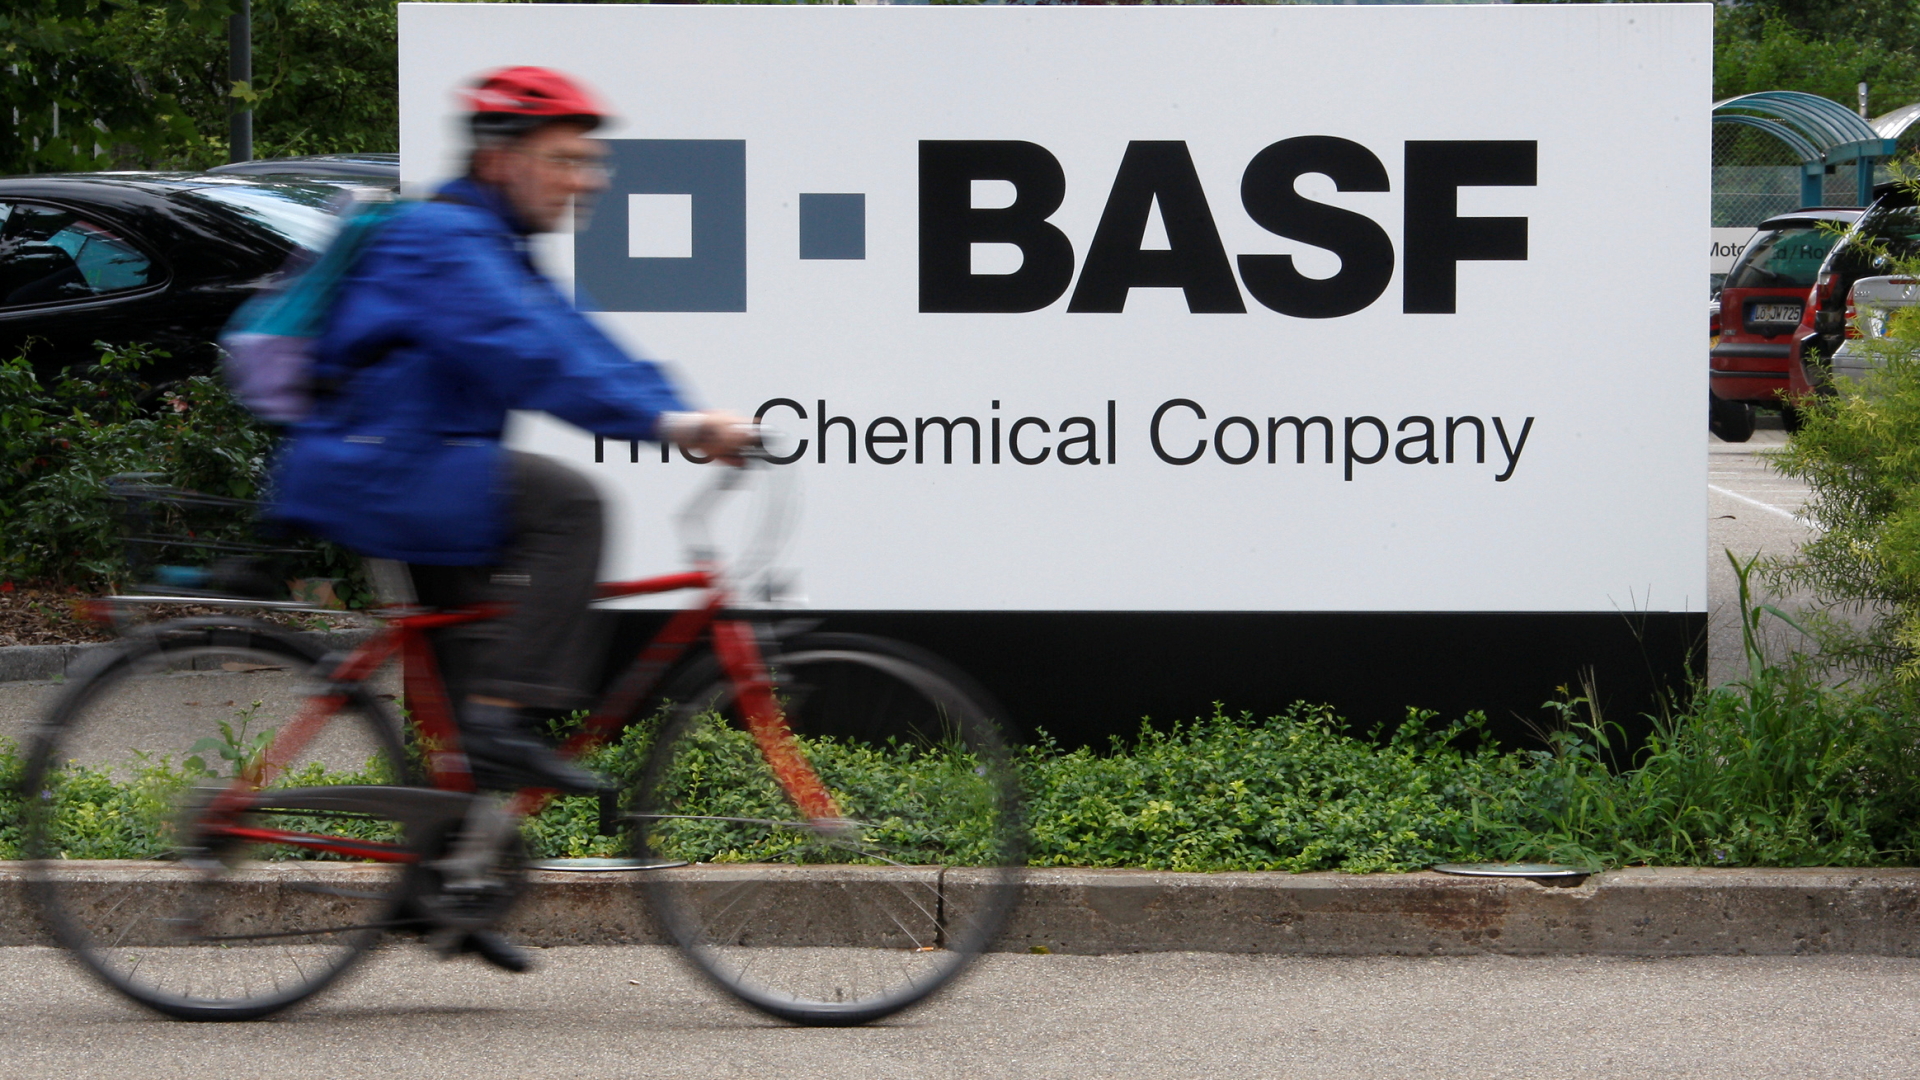 Radfahrer vor BASF-Firmenschild